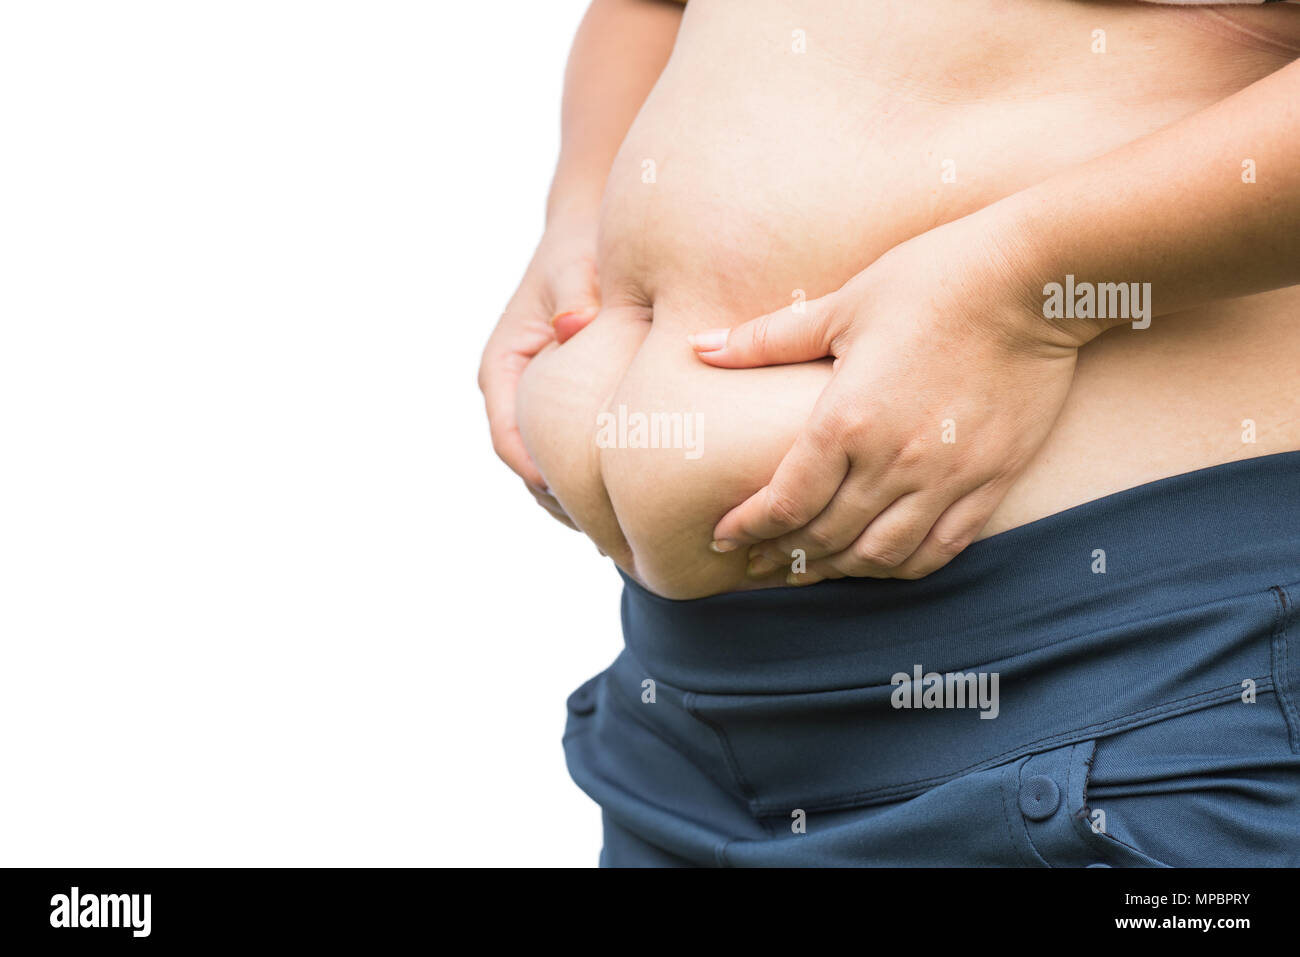 Mujer Fat mano sosteniendo su propia mujer la grasa del abdomen. El estilo  de vida de la dieta para reducir barriga y forma saludable concepto  muscular en el estómago Fotografía de stock 